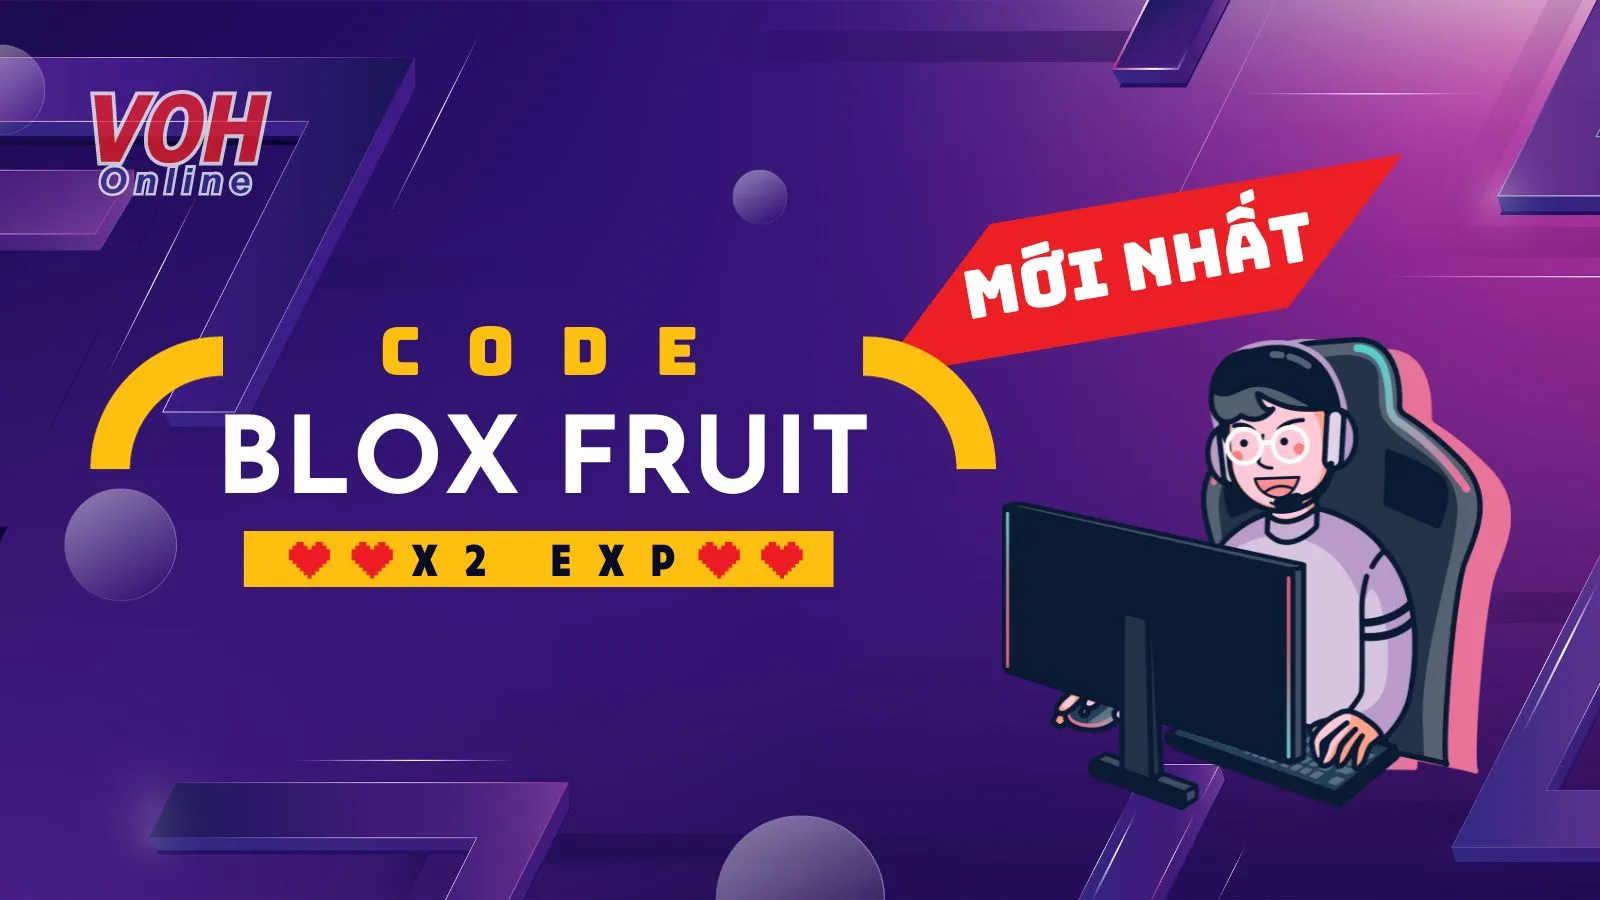 Cách Hack Blox Fruit trên điện thoại/ PC mới nhất 2023